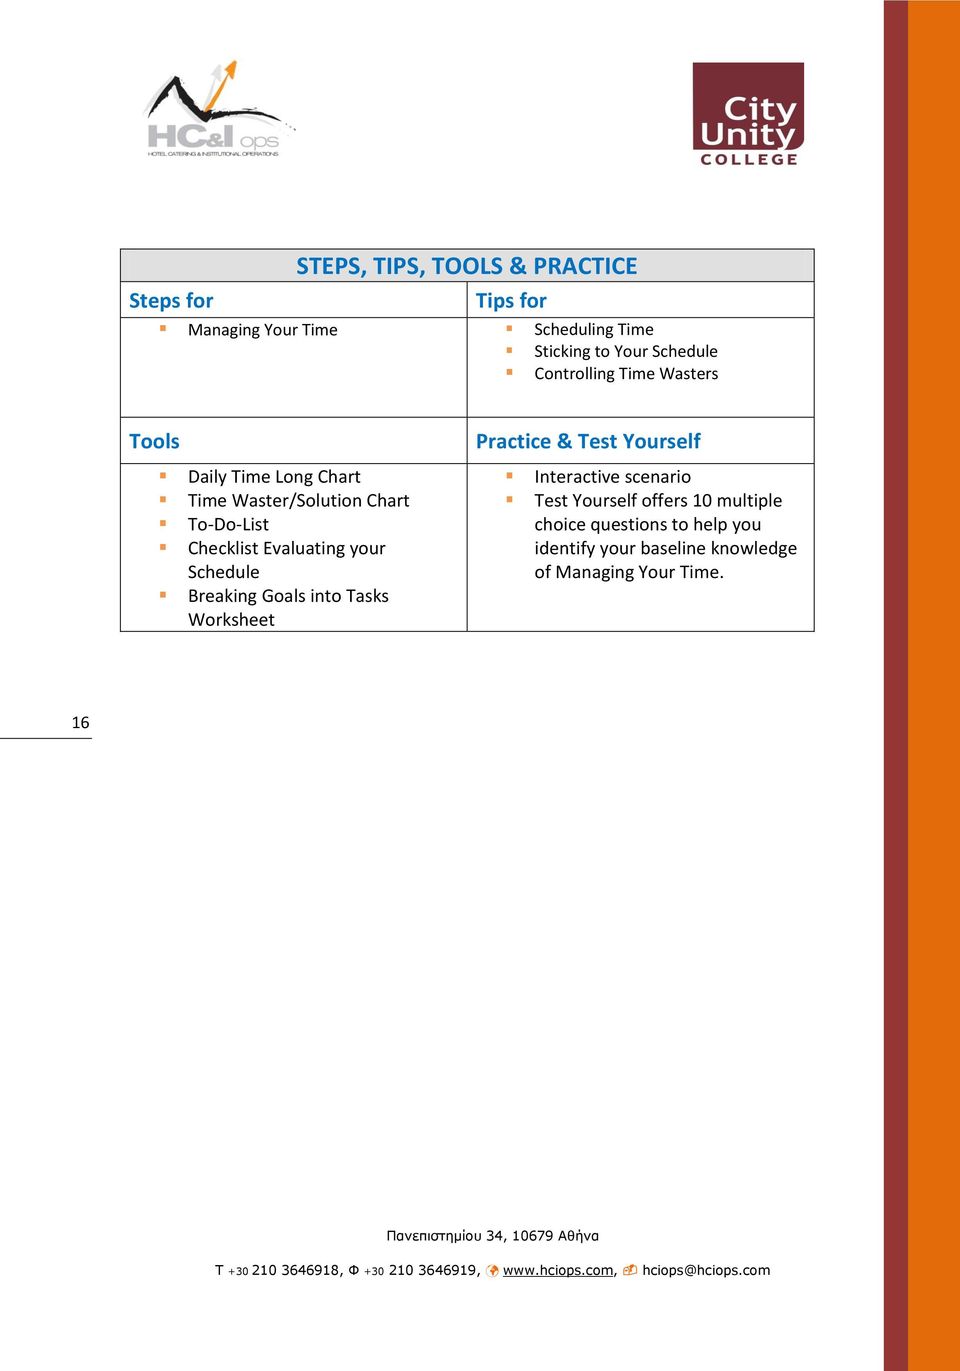 Evaluating your Schedule Breaking Goals into Tasks Worksheet Practice & Test Yourself Interactive scenario